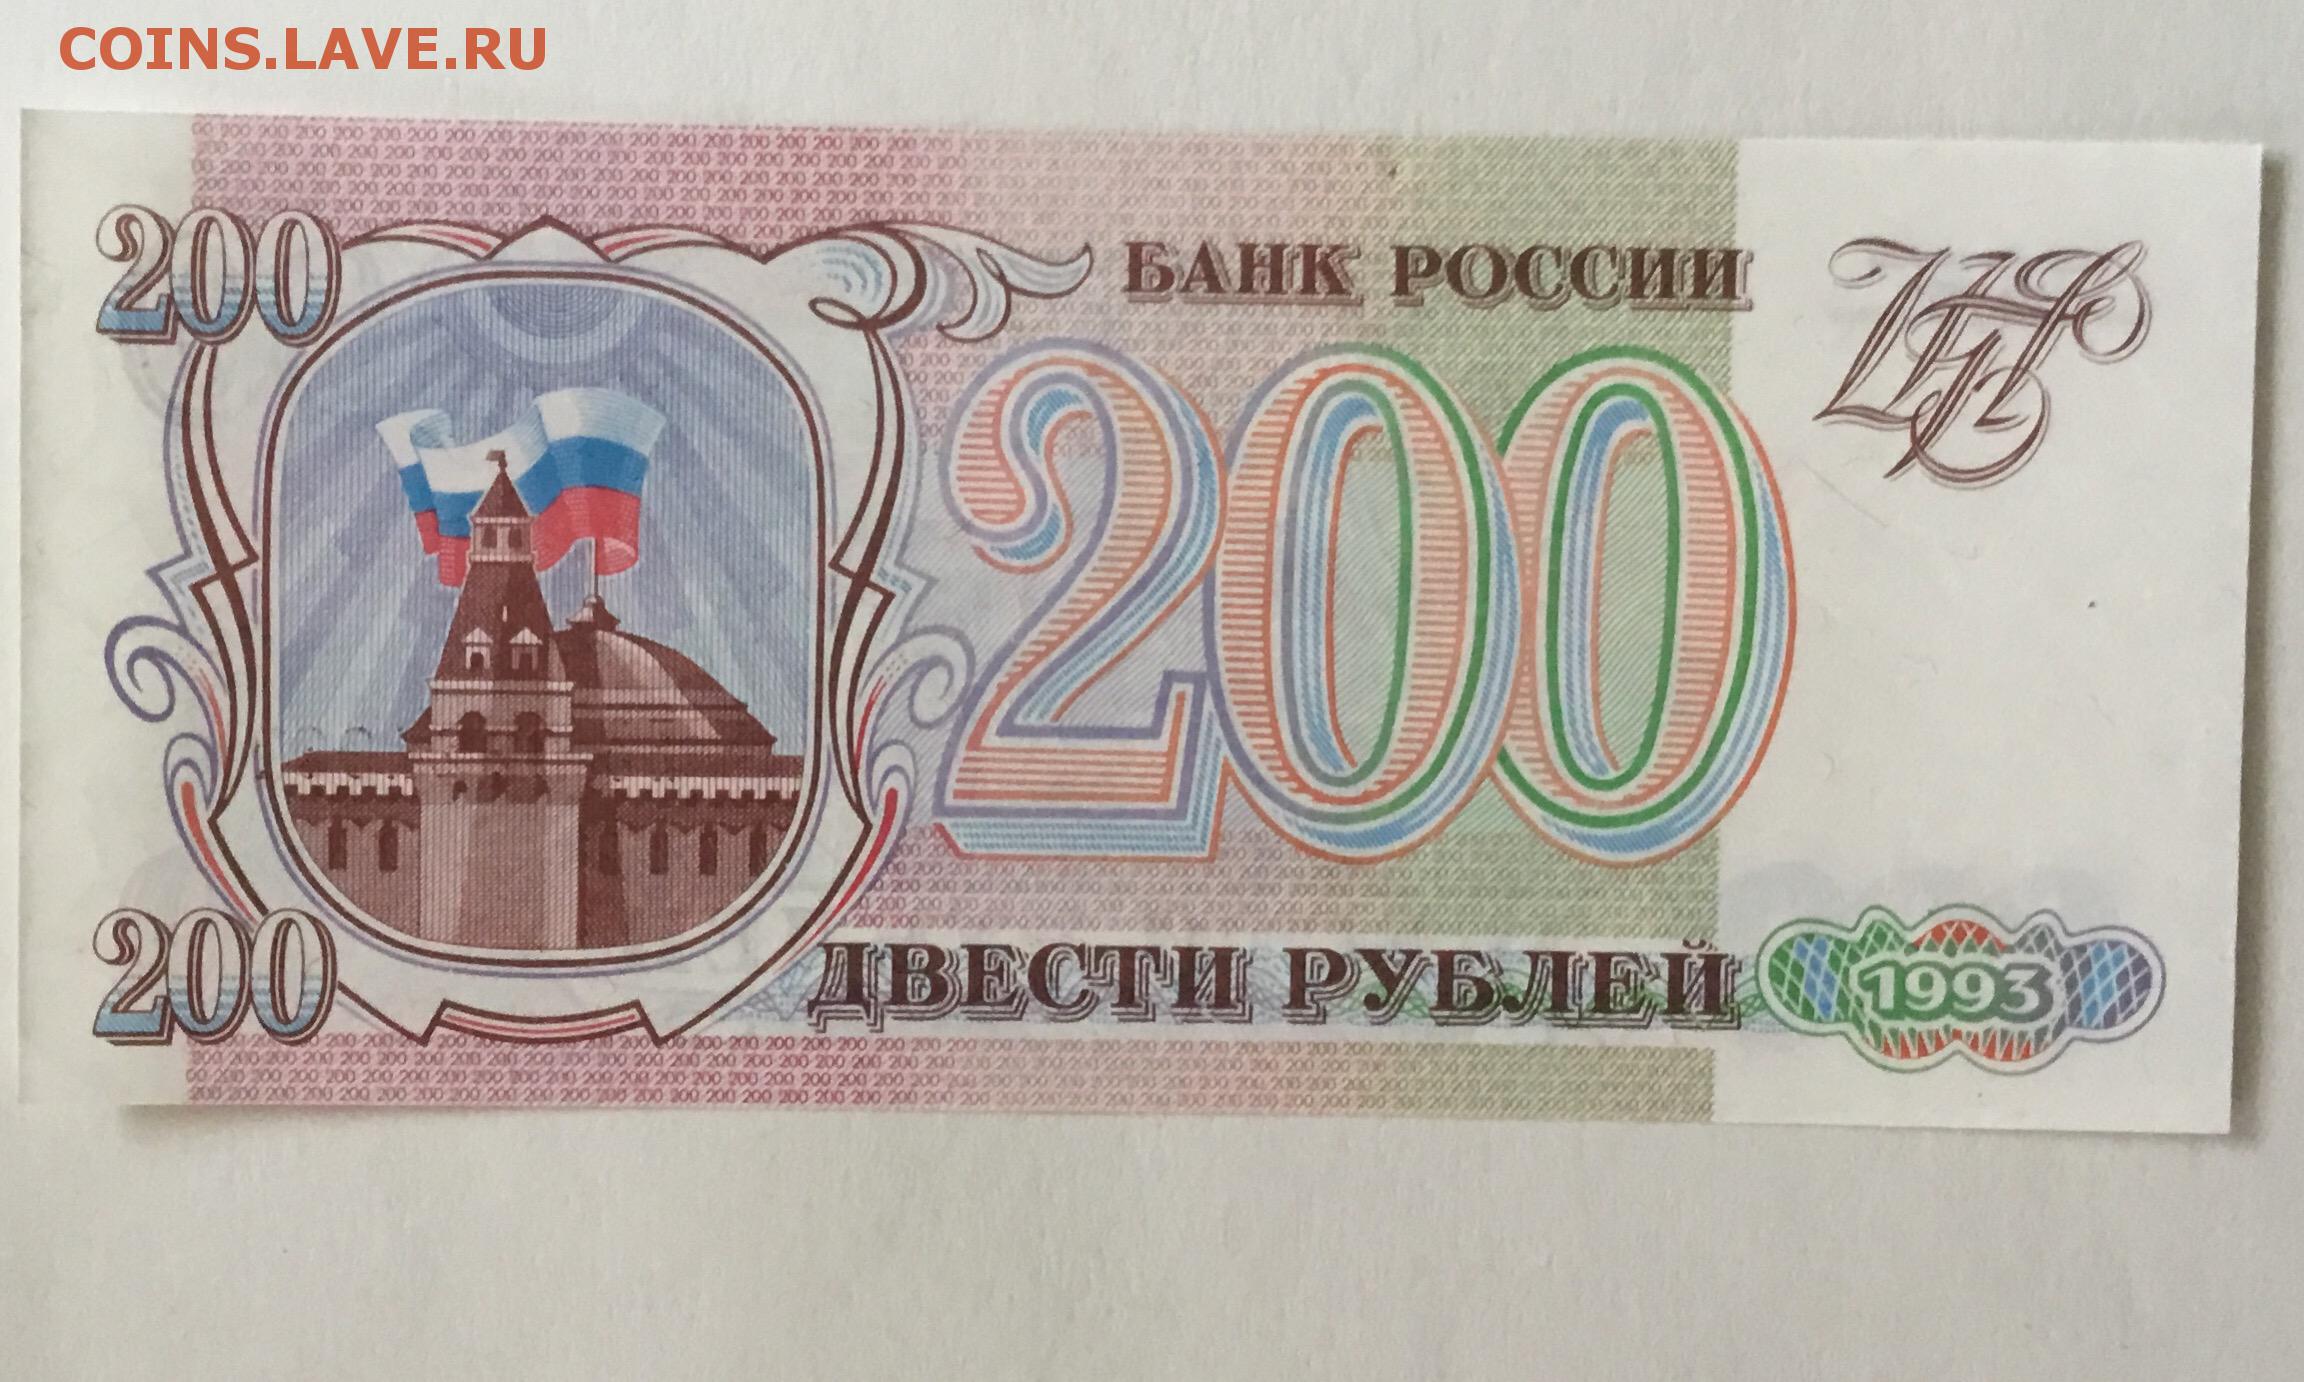 150 200 в рублях. Купюра 200 рублей 1993. 200 Рублей 1993 года. Двести рублей 1993. Банкнота 200 рублей 1993.